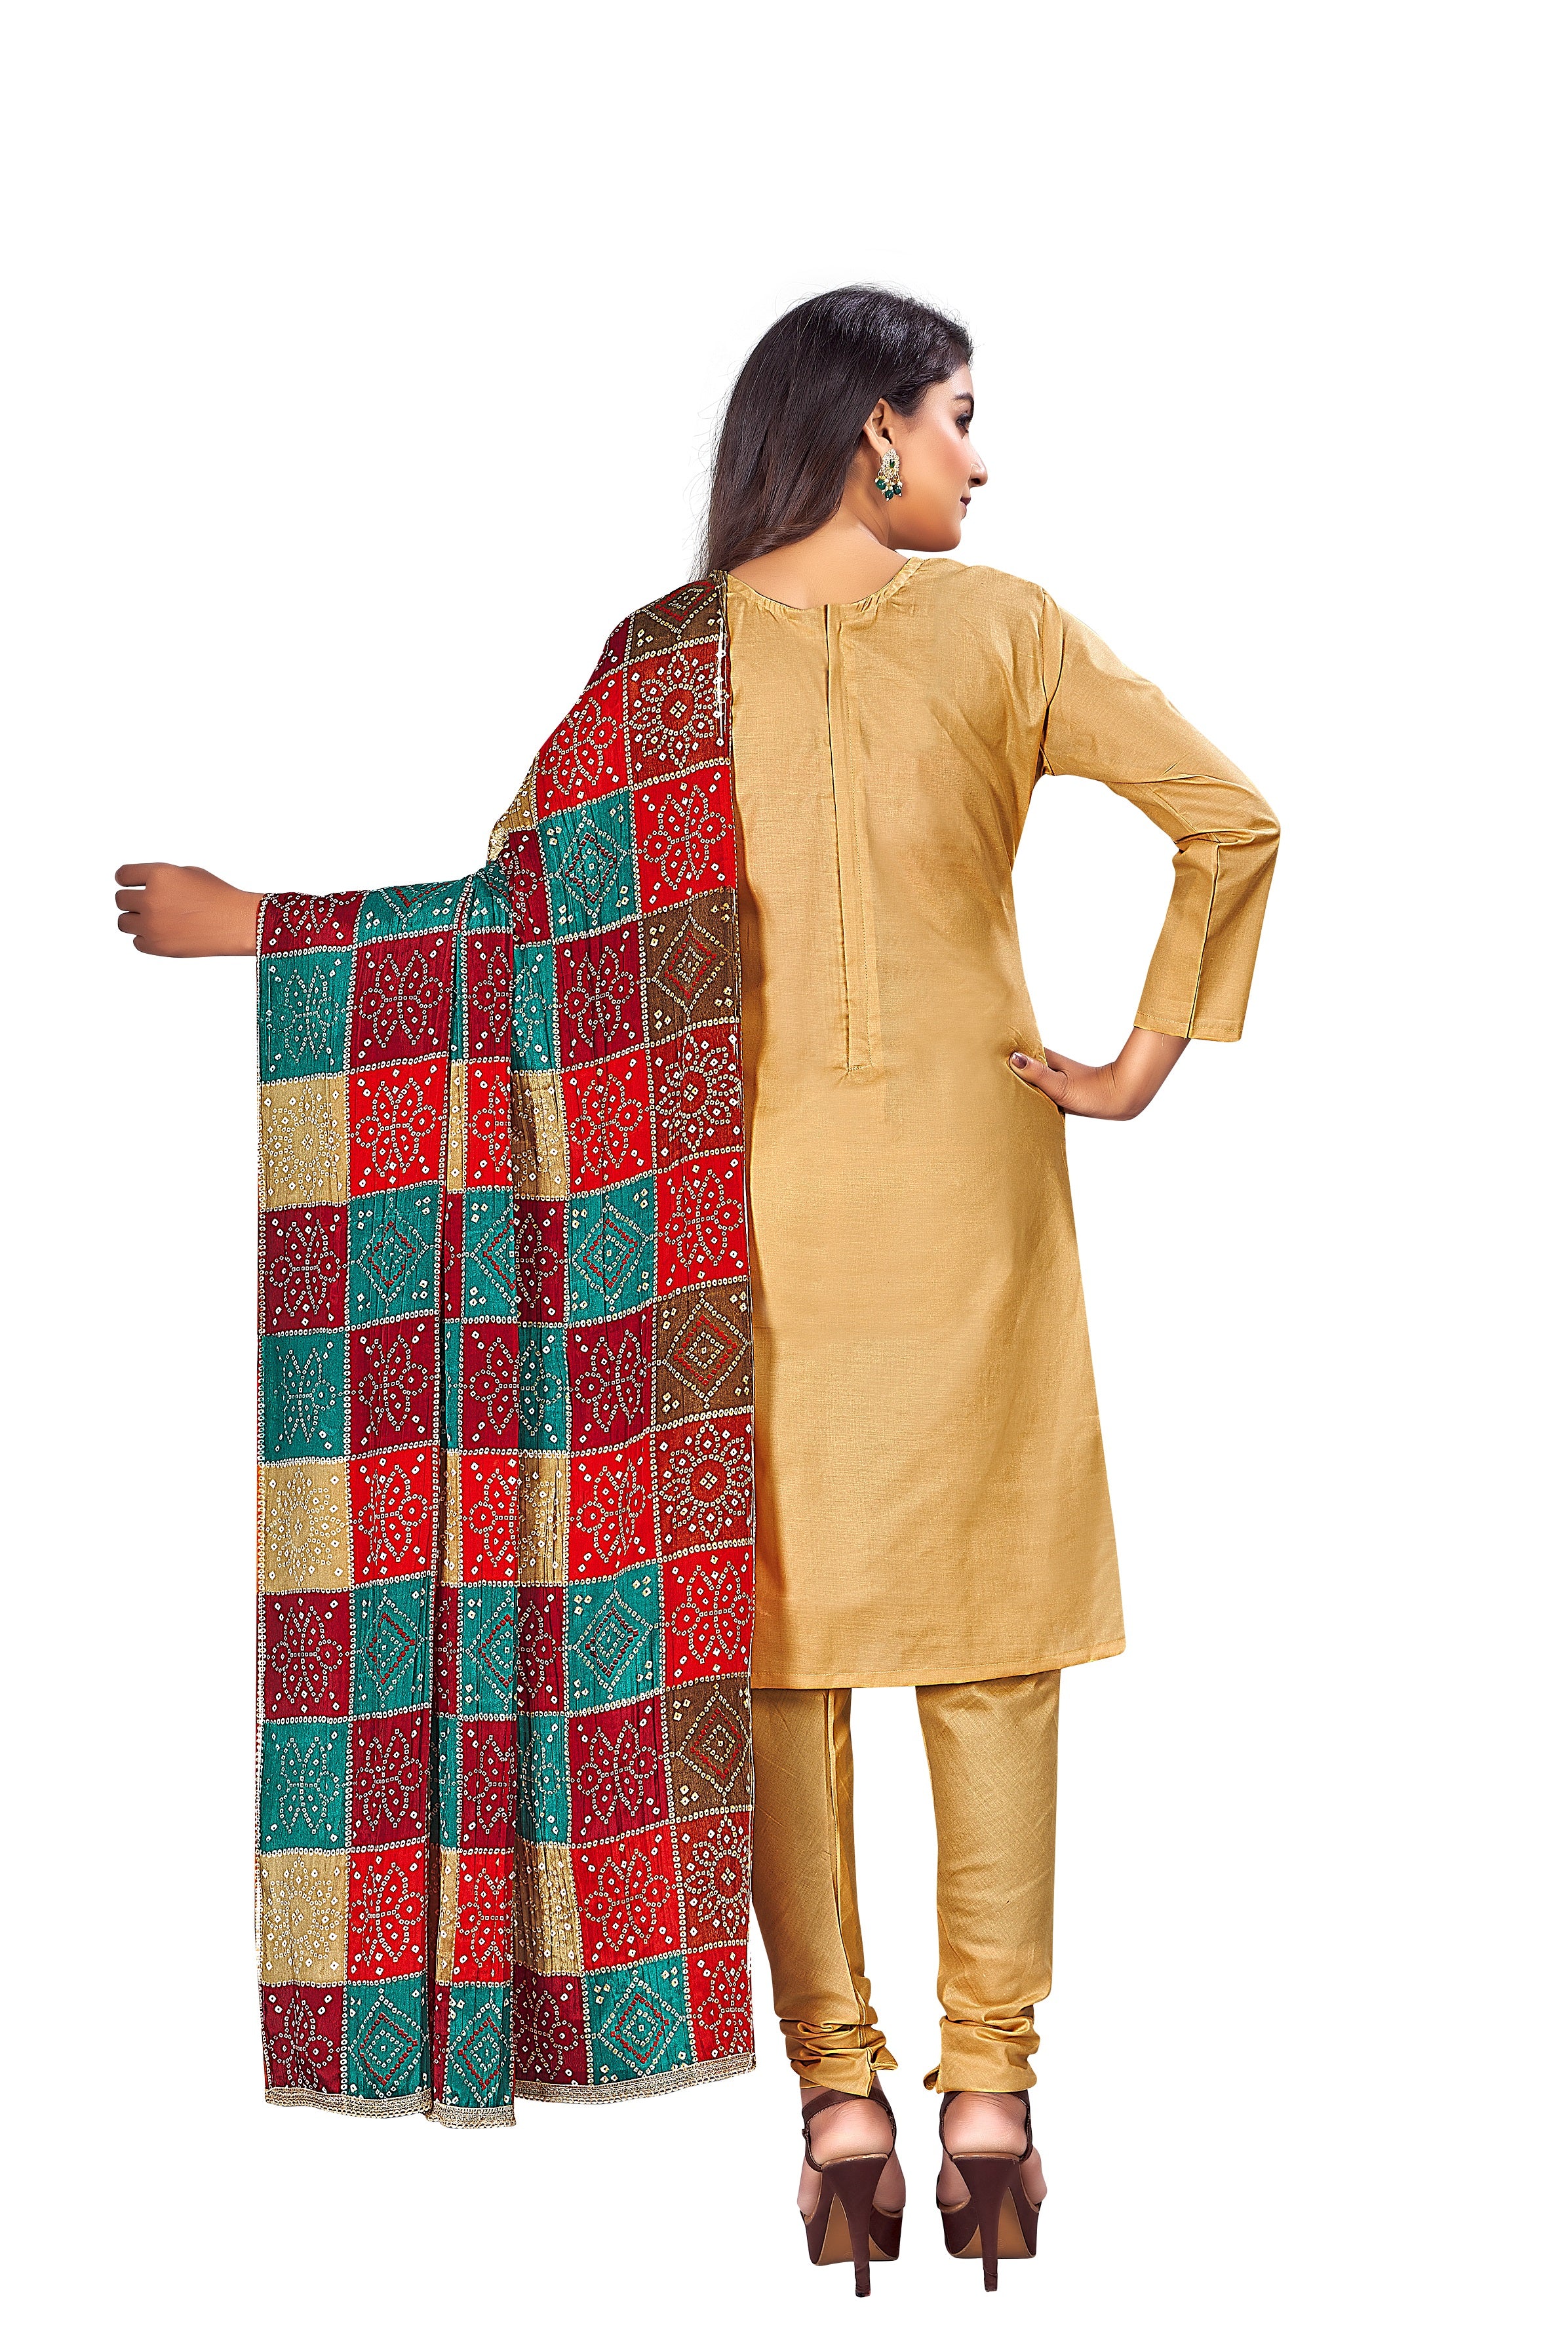 Women's Light Brown Colour Semi-Stitched Suit Sets - Dwija Fashion